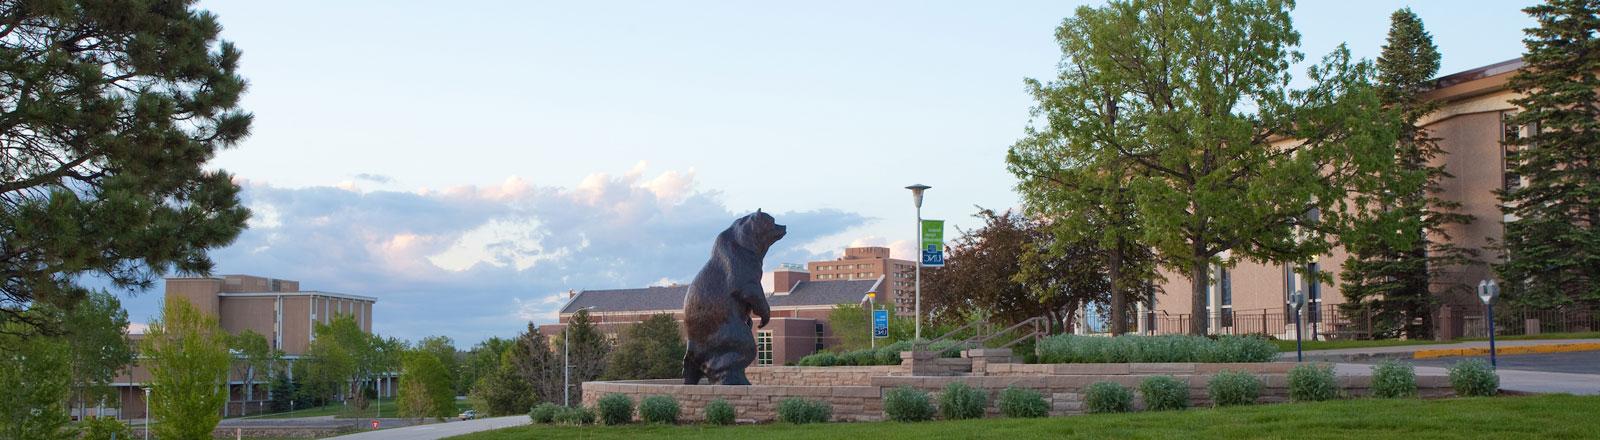 熊雕像位于大学中心外